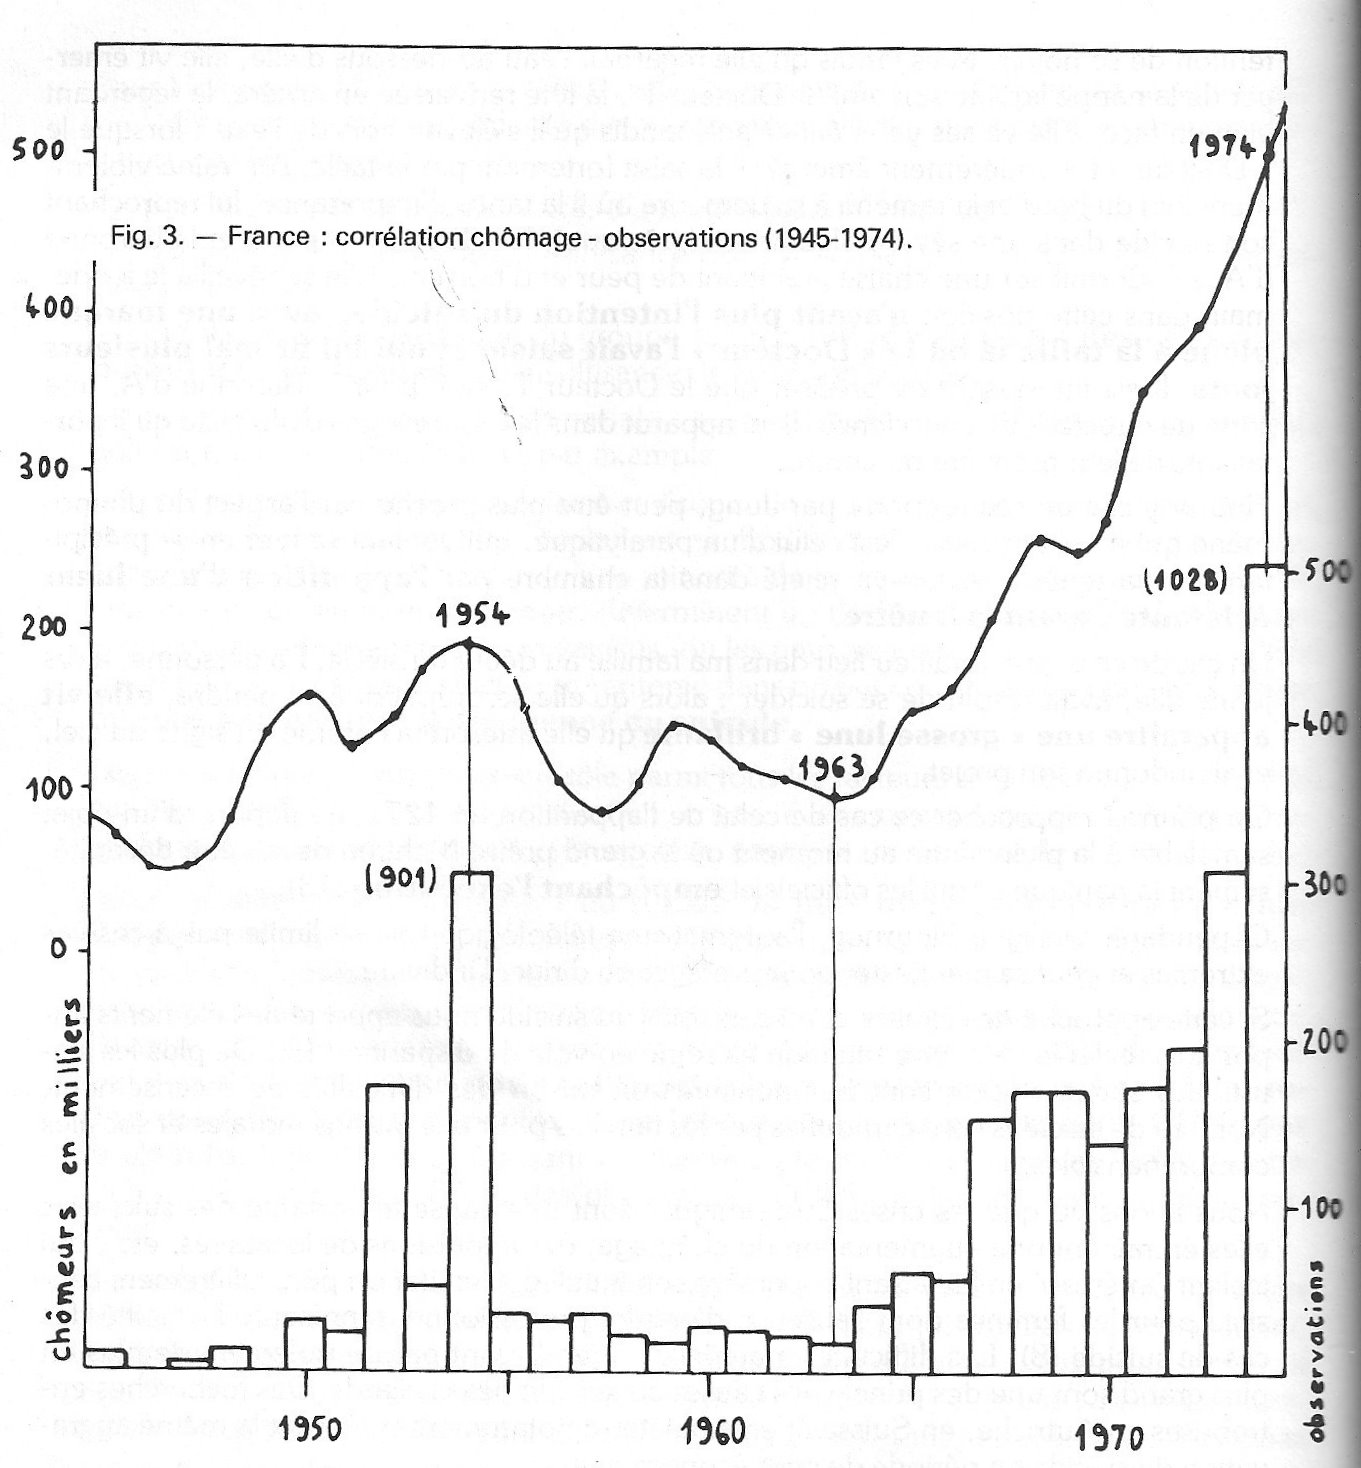 France : corrélation chômage - observations (1945-1974)